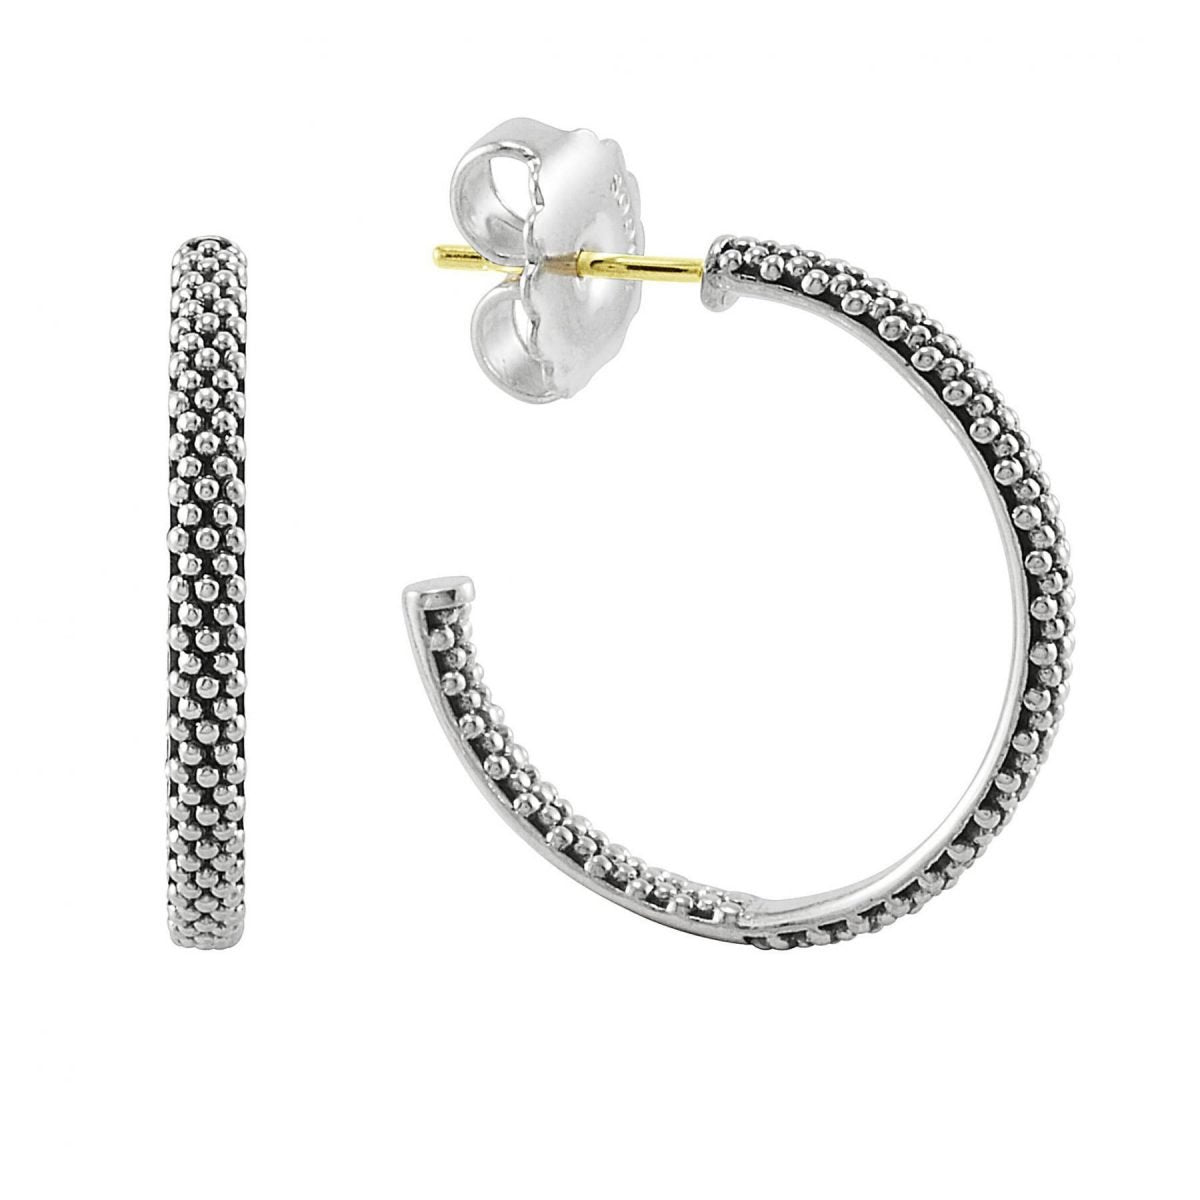 Style: Hoop Description: Earring - Sterling Silver Earrings